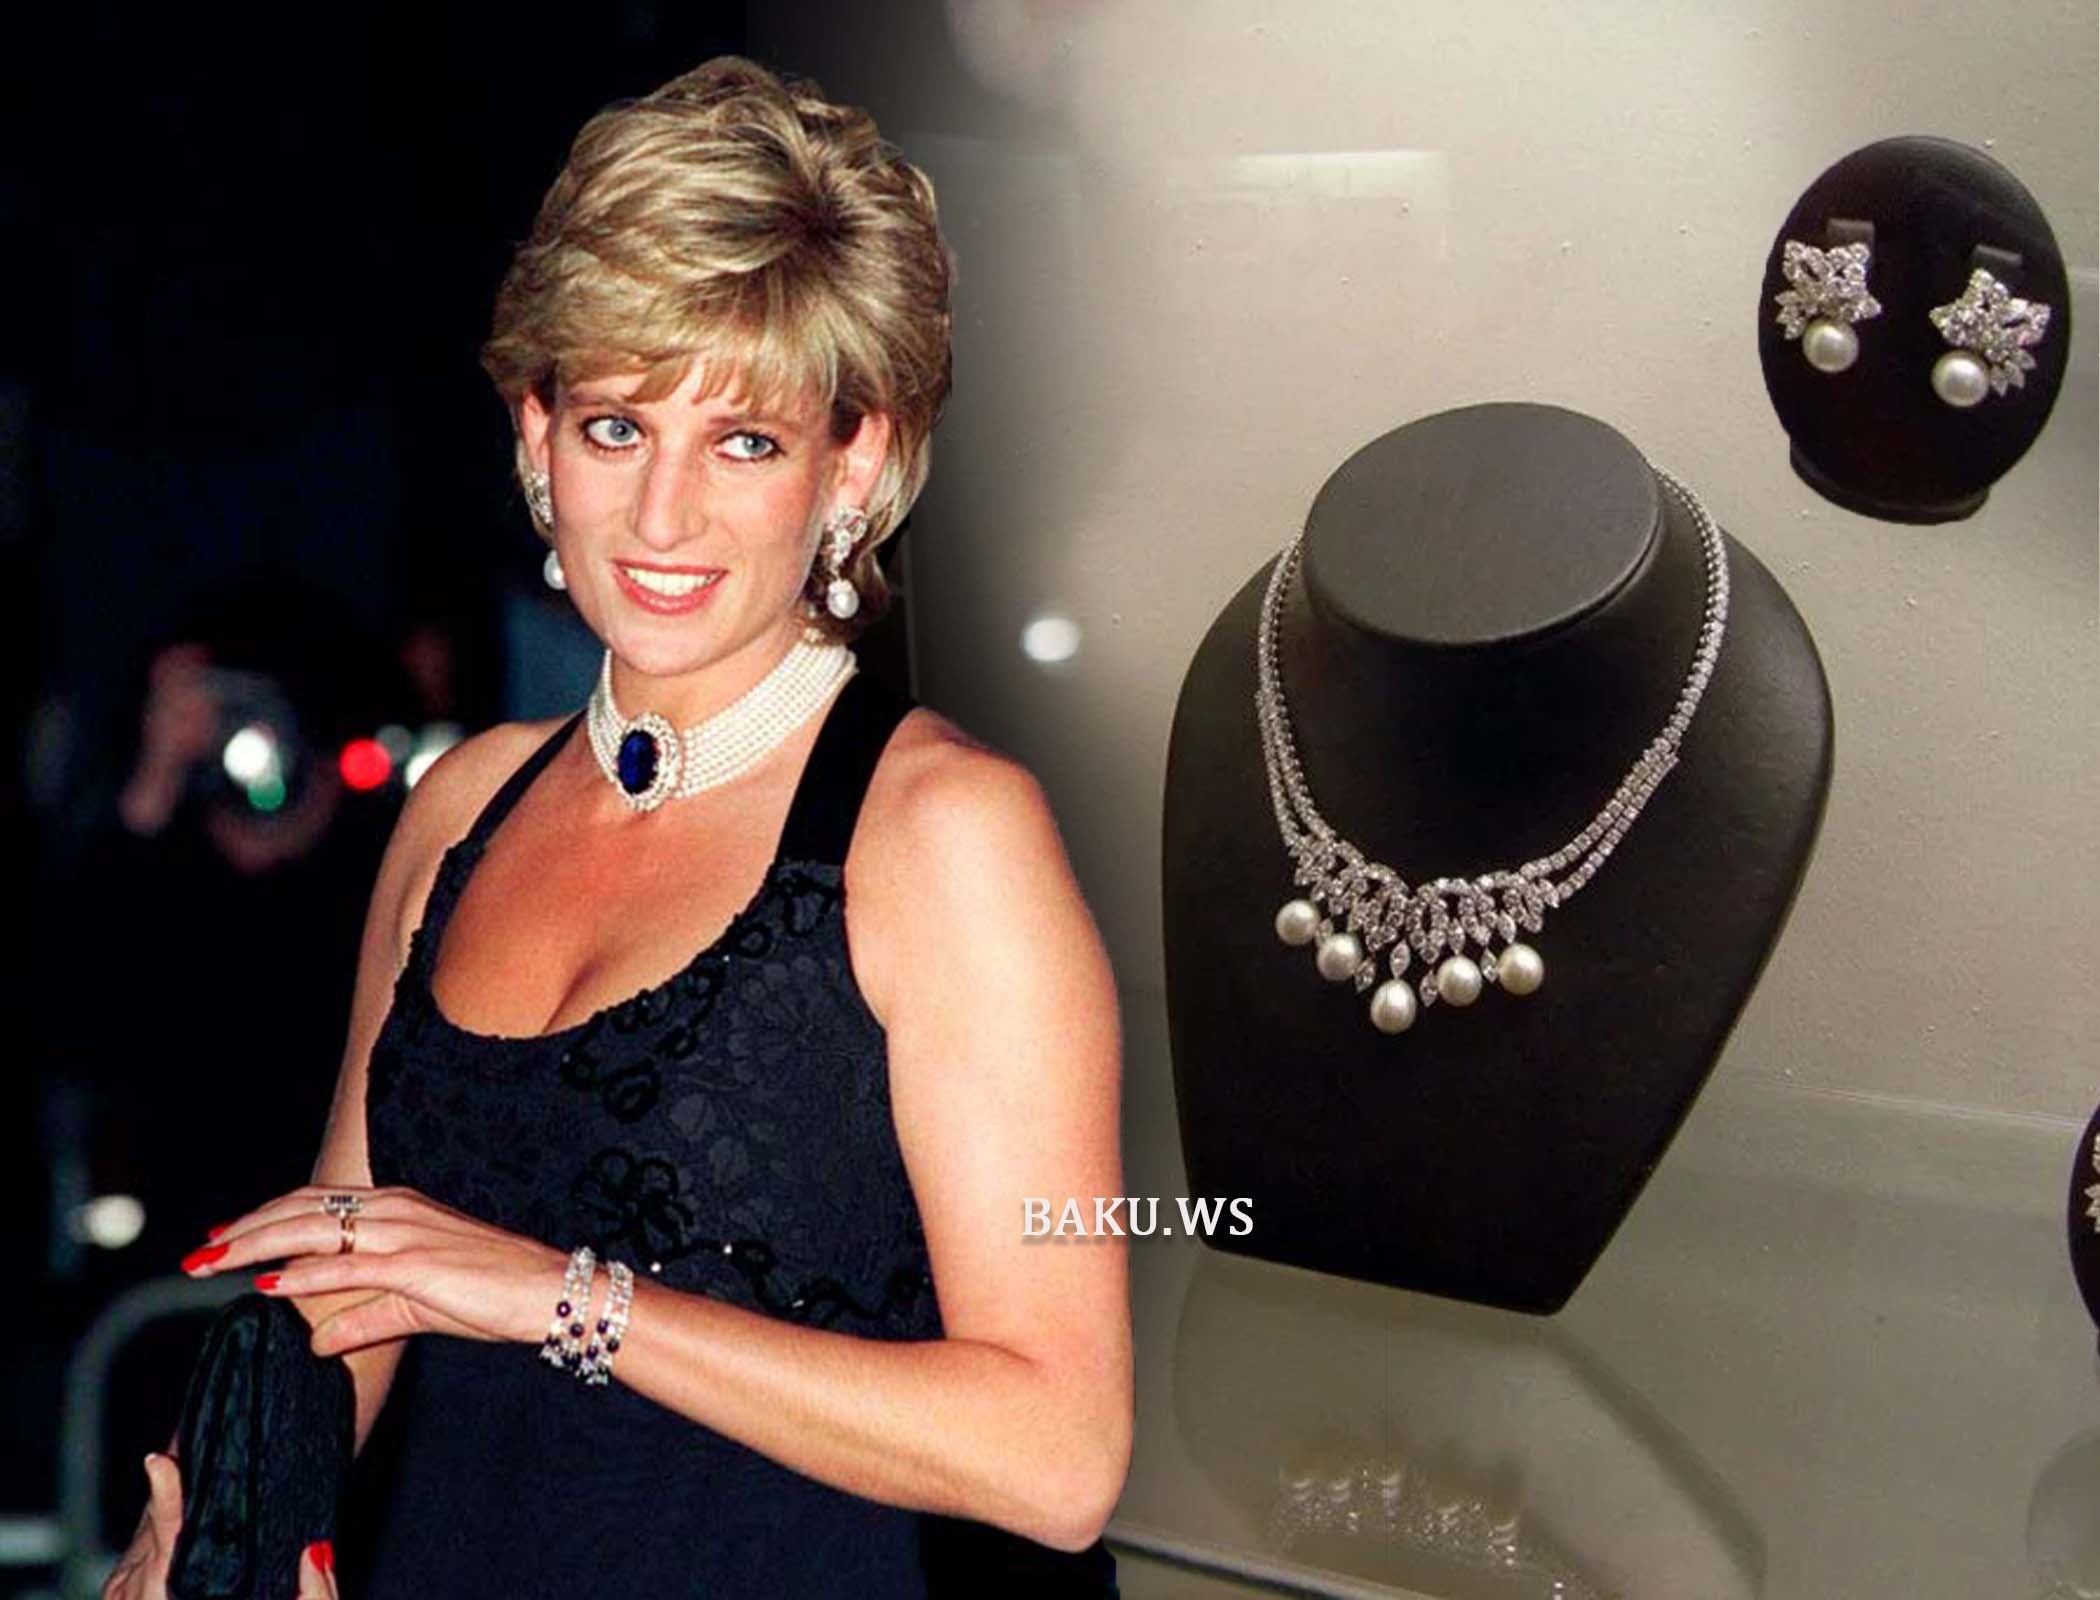 Şahzadə Diananın qızılları 15 milyona satıla bilər - FOTO